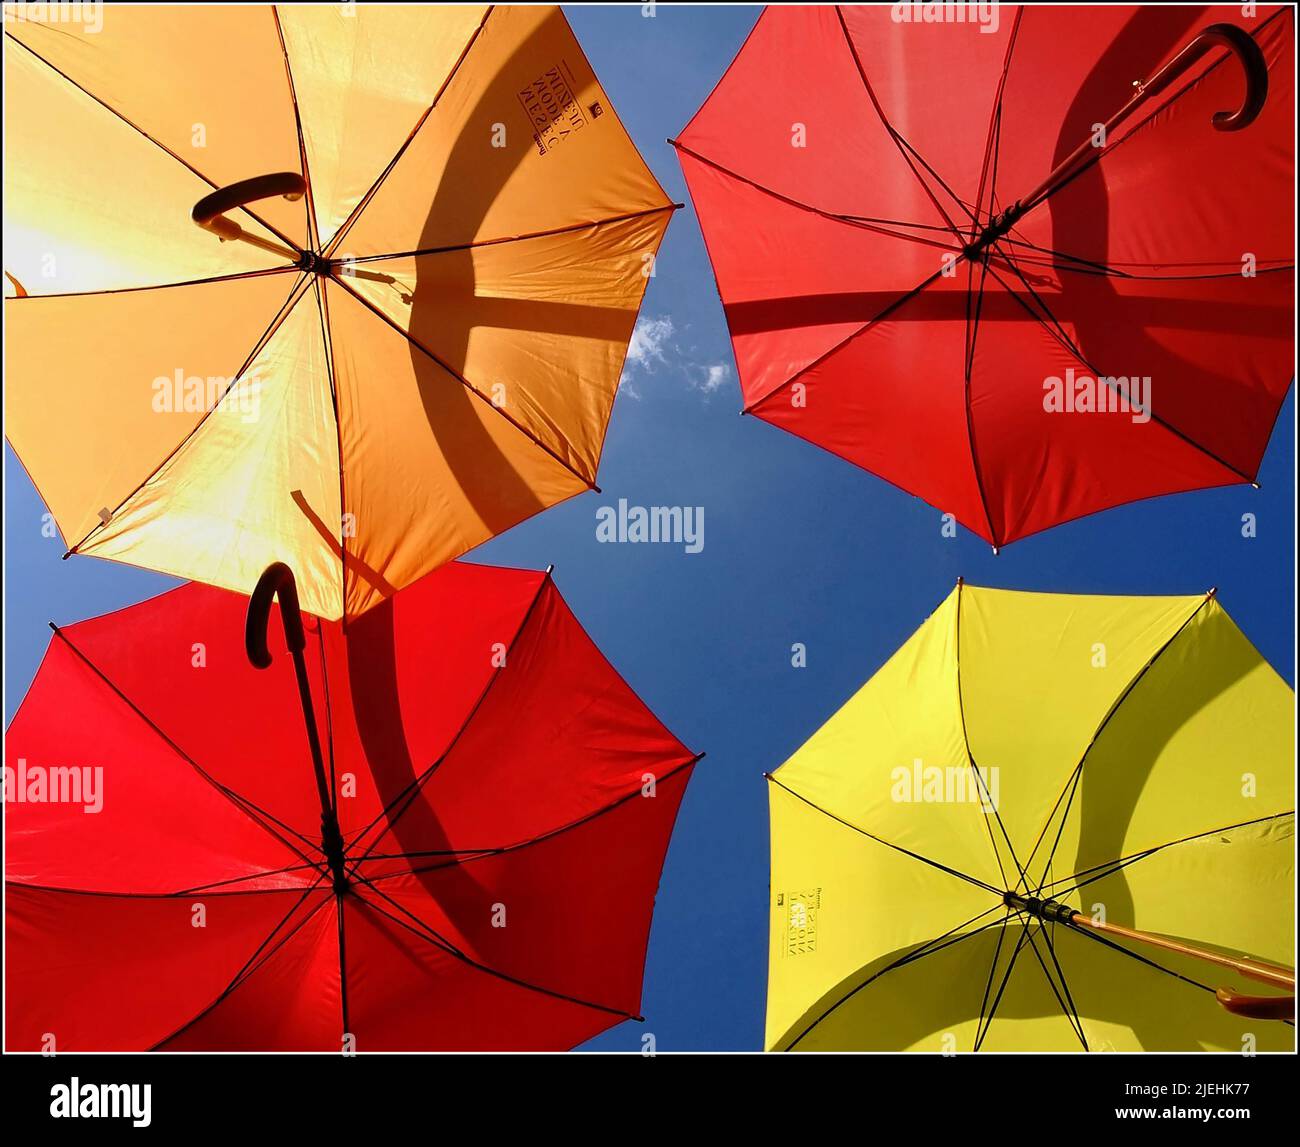 Bunte Regenschirme vor blauen Himel, rote, gelbe, aufgespannte Schirme, Foto Stock